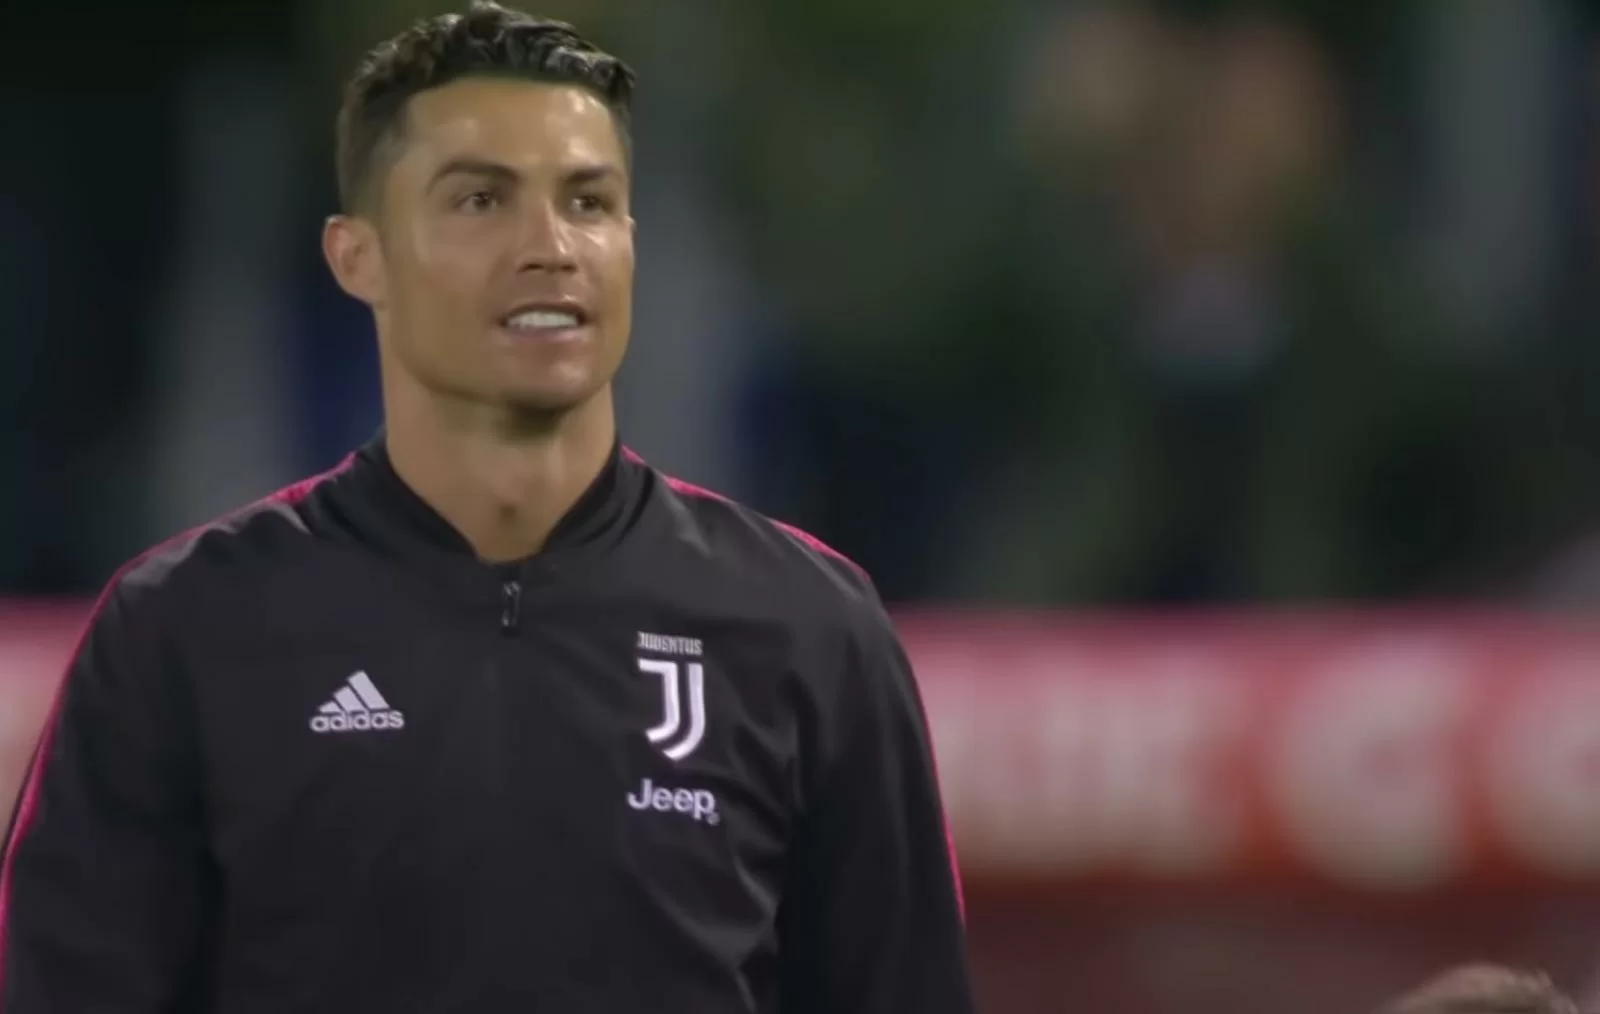 Ronaldo rassicura l’ambiente: “Concentrato sul recupero”